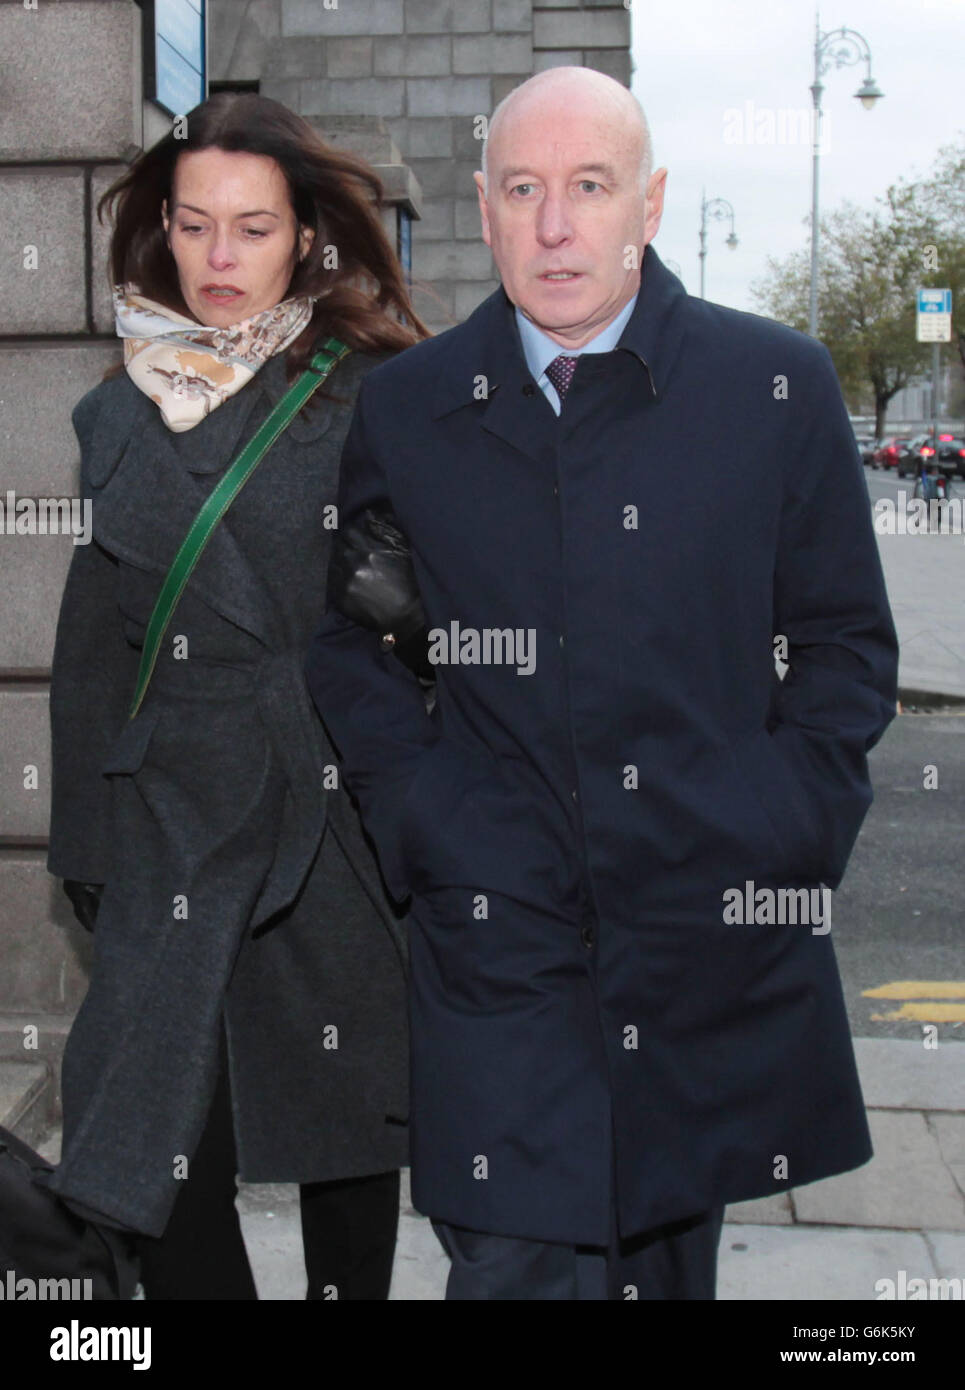 Anthony Lyons arrive, avec une femme non identifiée, à la Cour d'appel pénale de Dublin, où il fait face à une peine révisée pour avoir agressé une femme après que la Cour a jugé que la peine initiale de prison était trop clémente. Banque D'Images